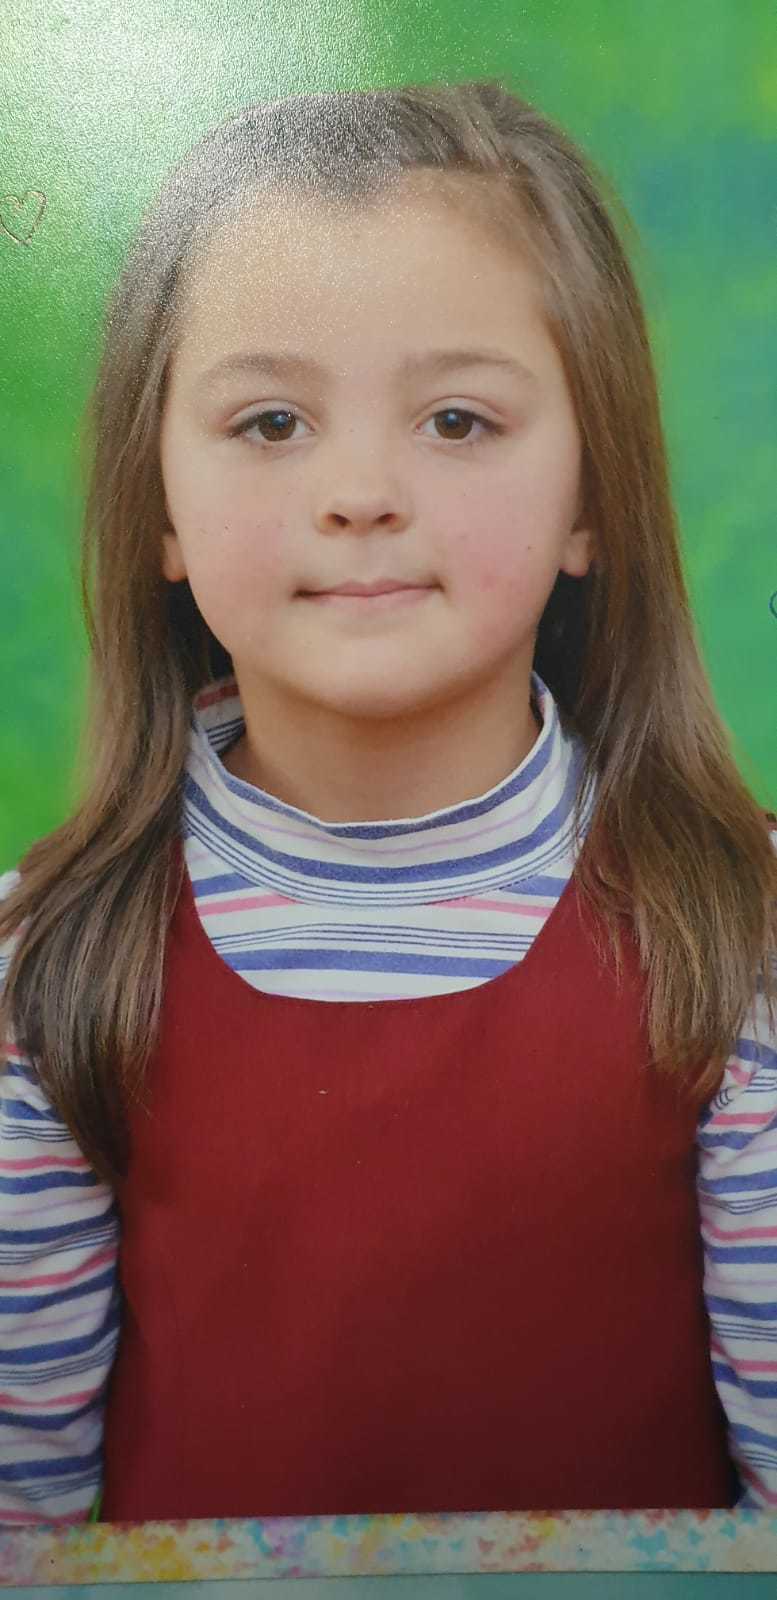 Botoşani: Fata de 10 ani care nu a mai ajuns acasă după cursuri, găsită teafără miercuri dimineaţa
